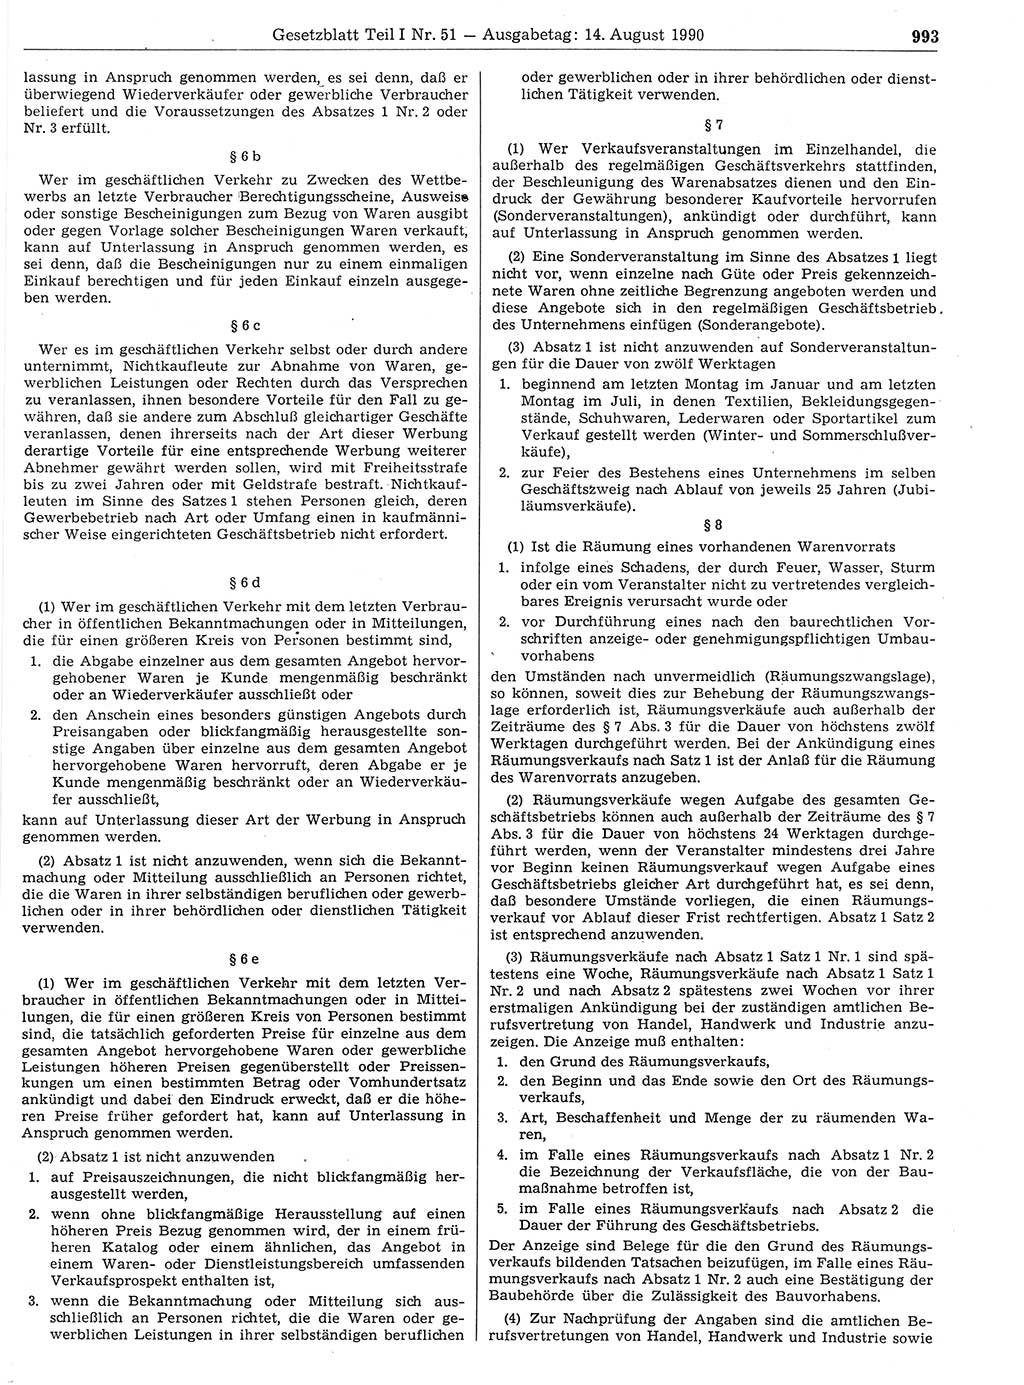 Gesetzblatt (GBl.) der Deutschen Demokratischen Republik (DDR) Teil Ⅰ 1990, Seite 993 (GBl. DDR Ⅰ 1990, S. 993)